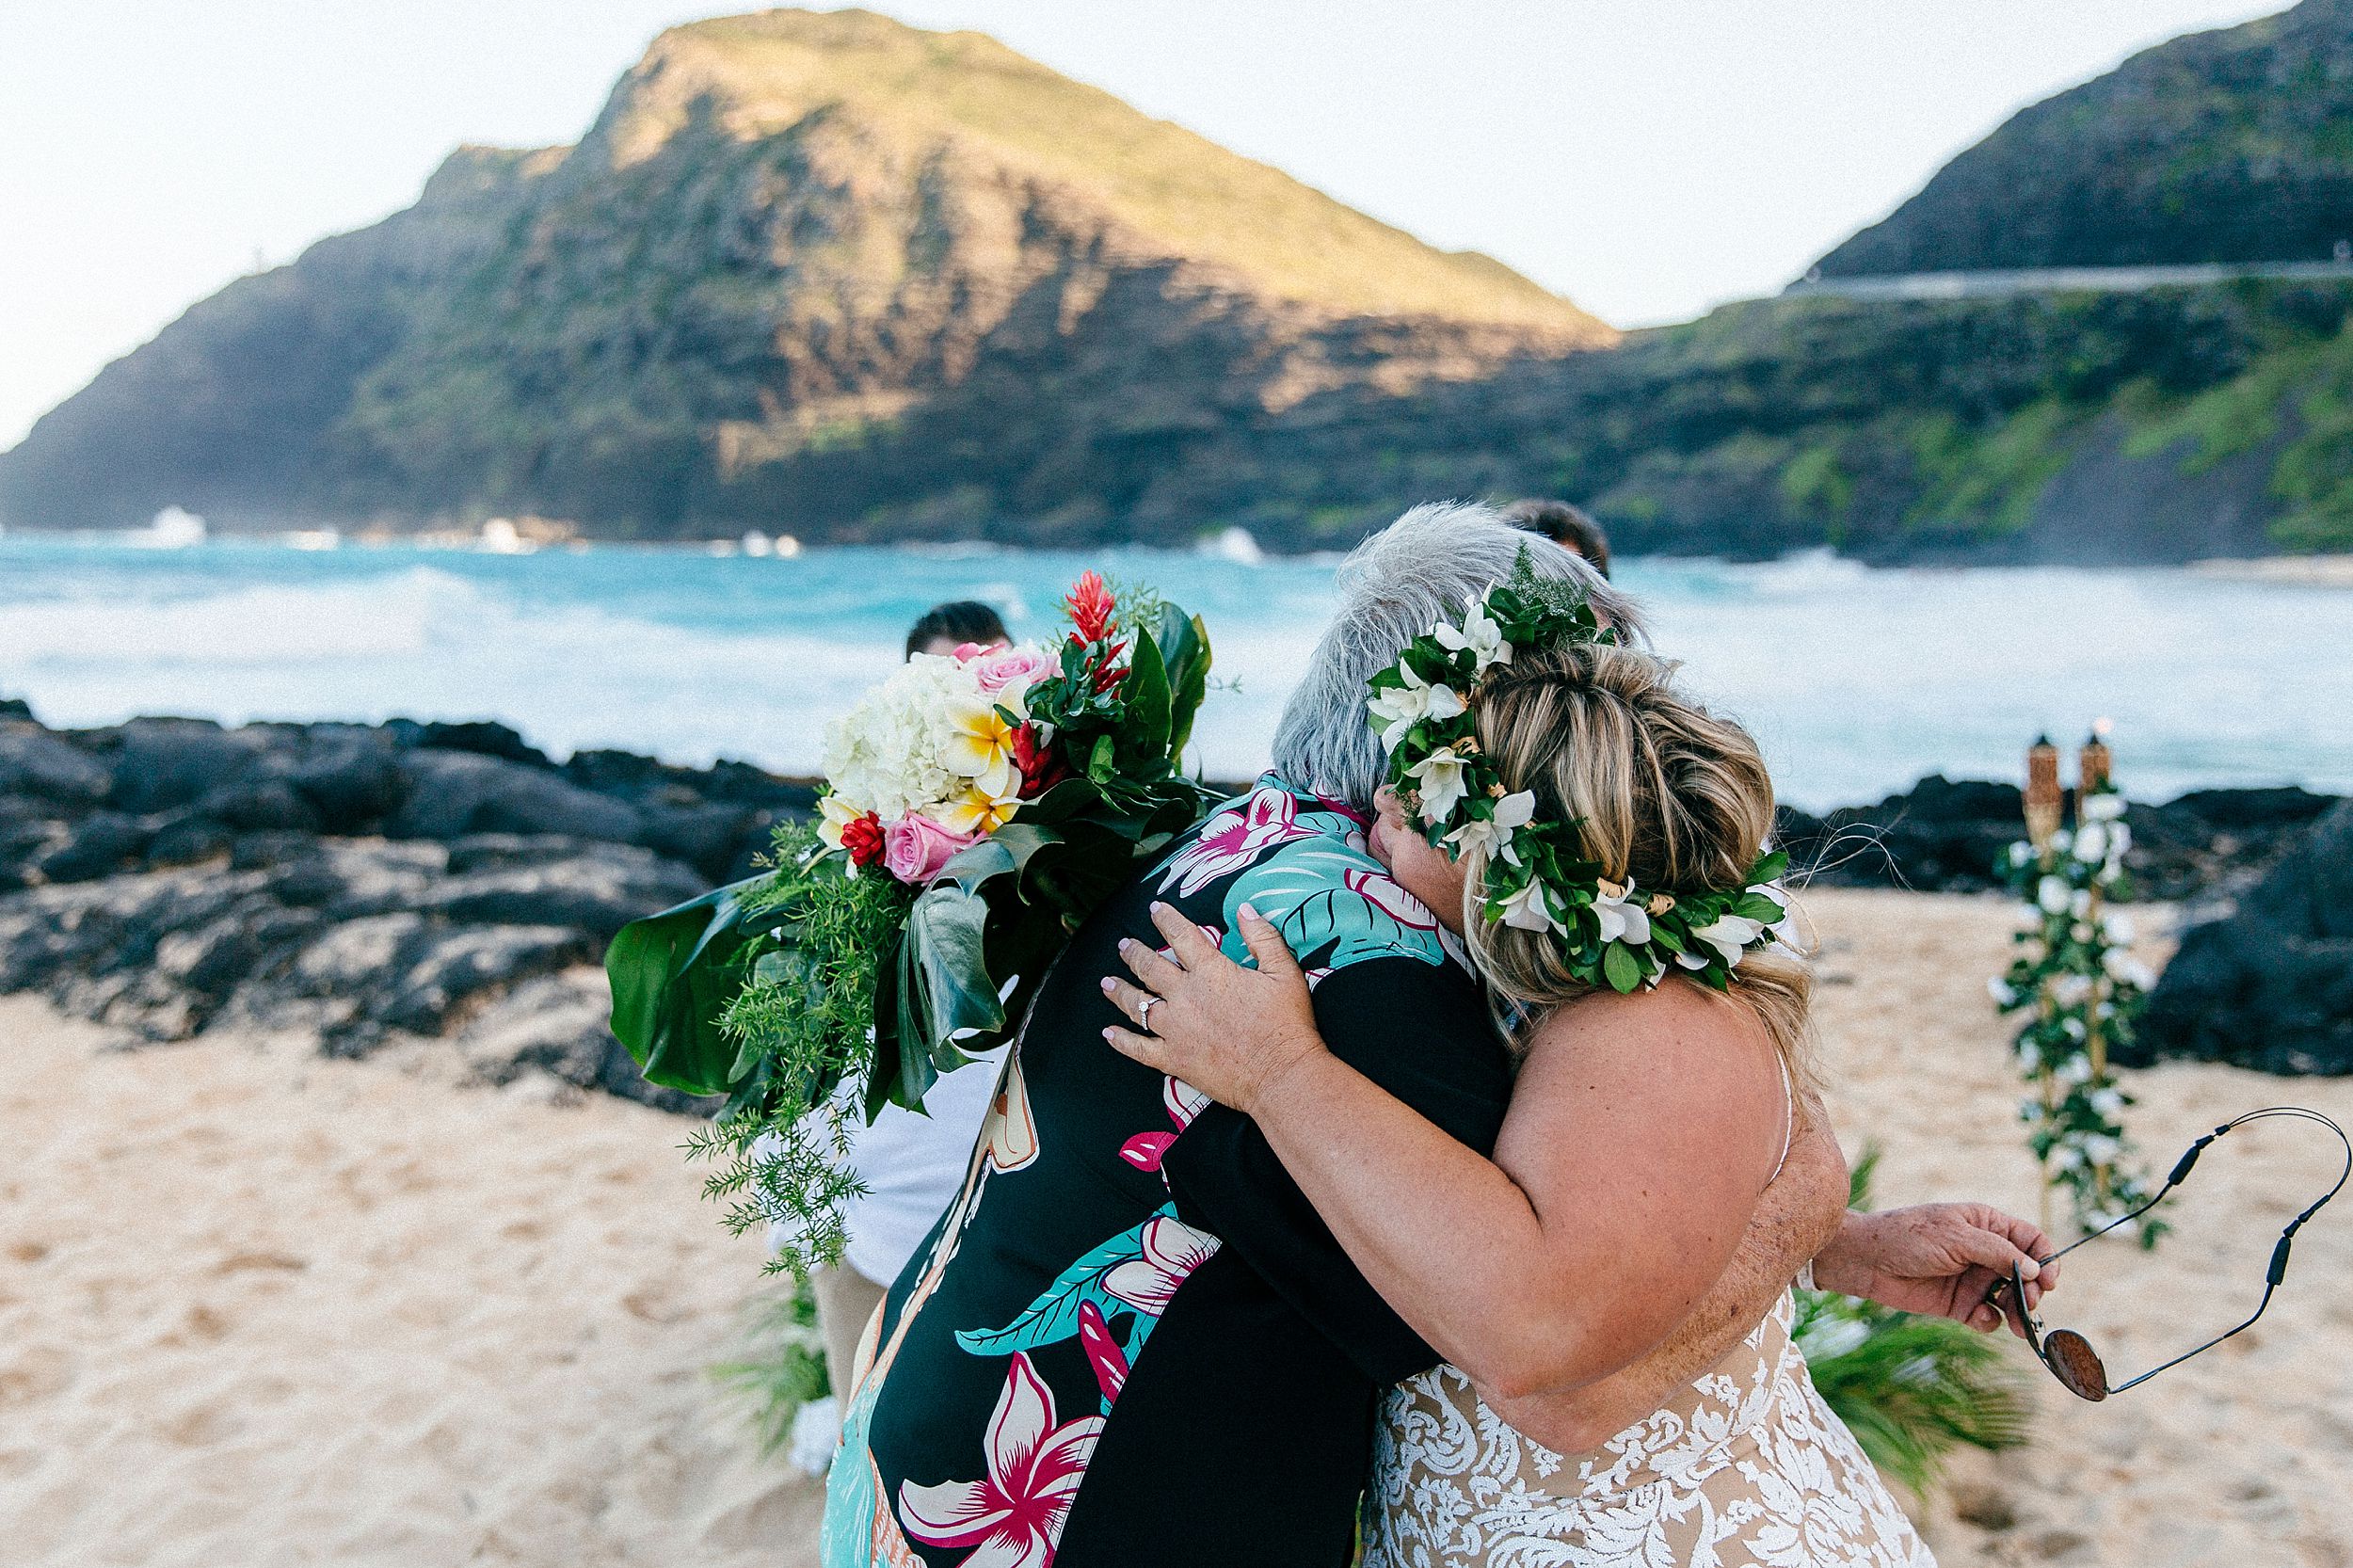 Emotional elopement vows in Honolulu, Hawaii